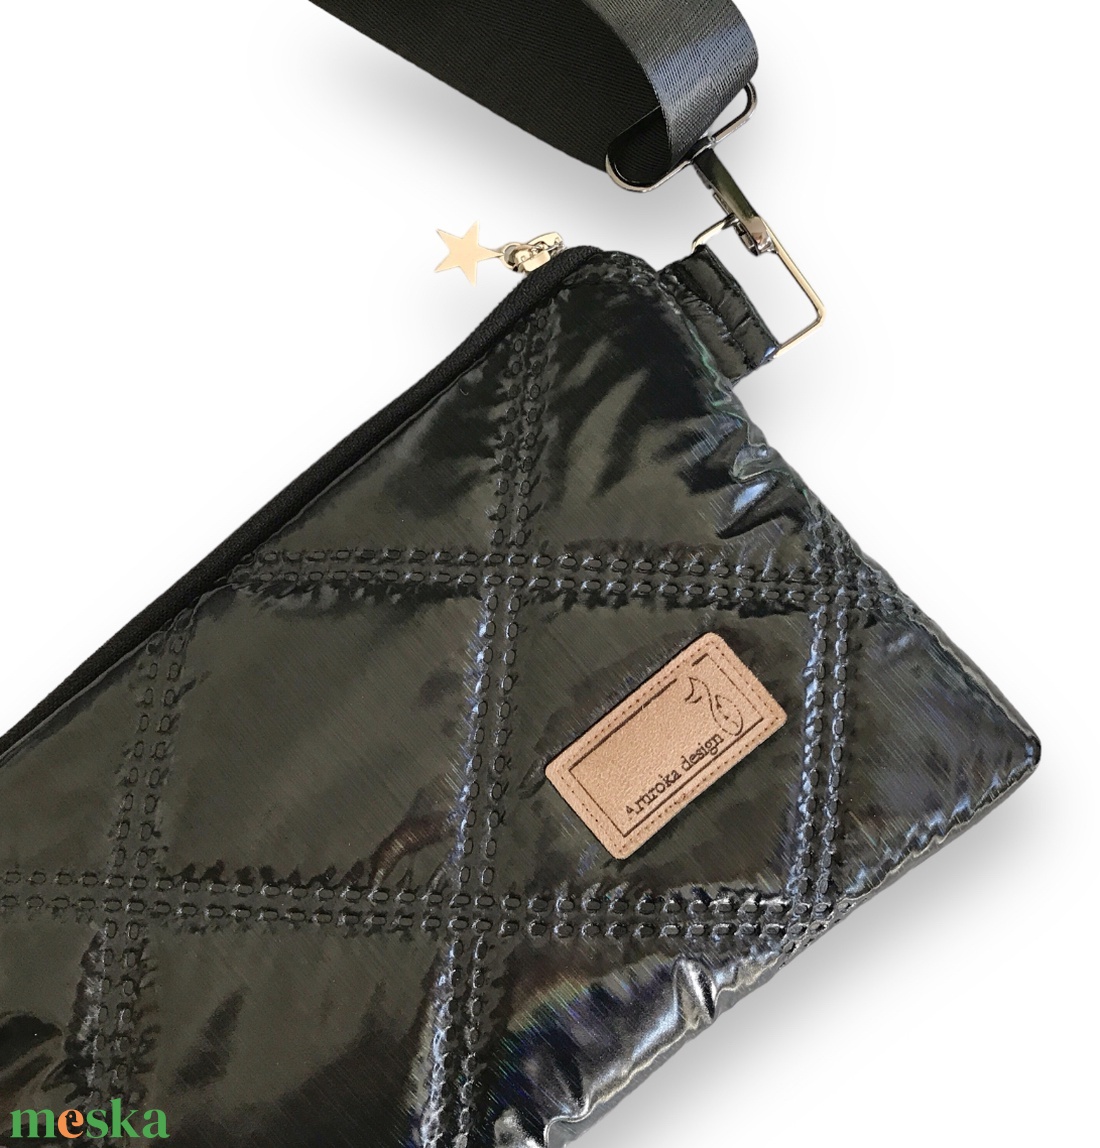 Vízálló elegáns Emily táska fekete színben   - Artiroka design - táska & tok - kézitáska & válltáska - válltáska - Meska.hu